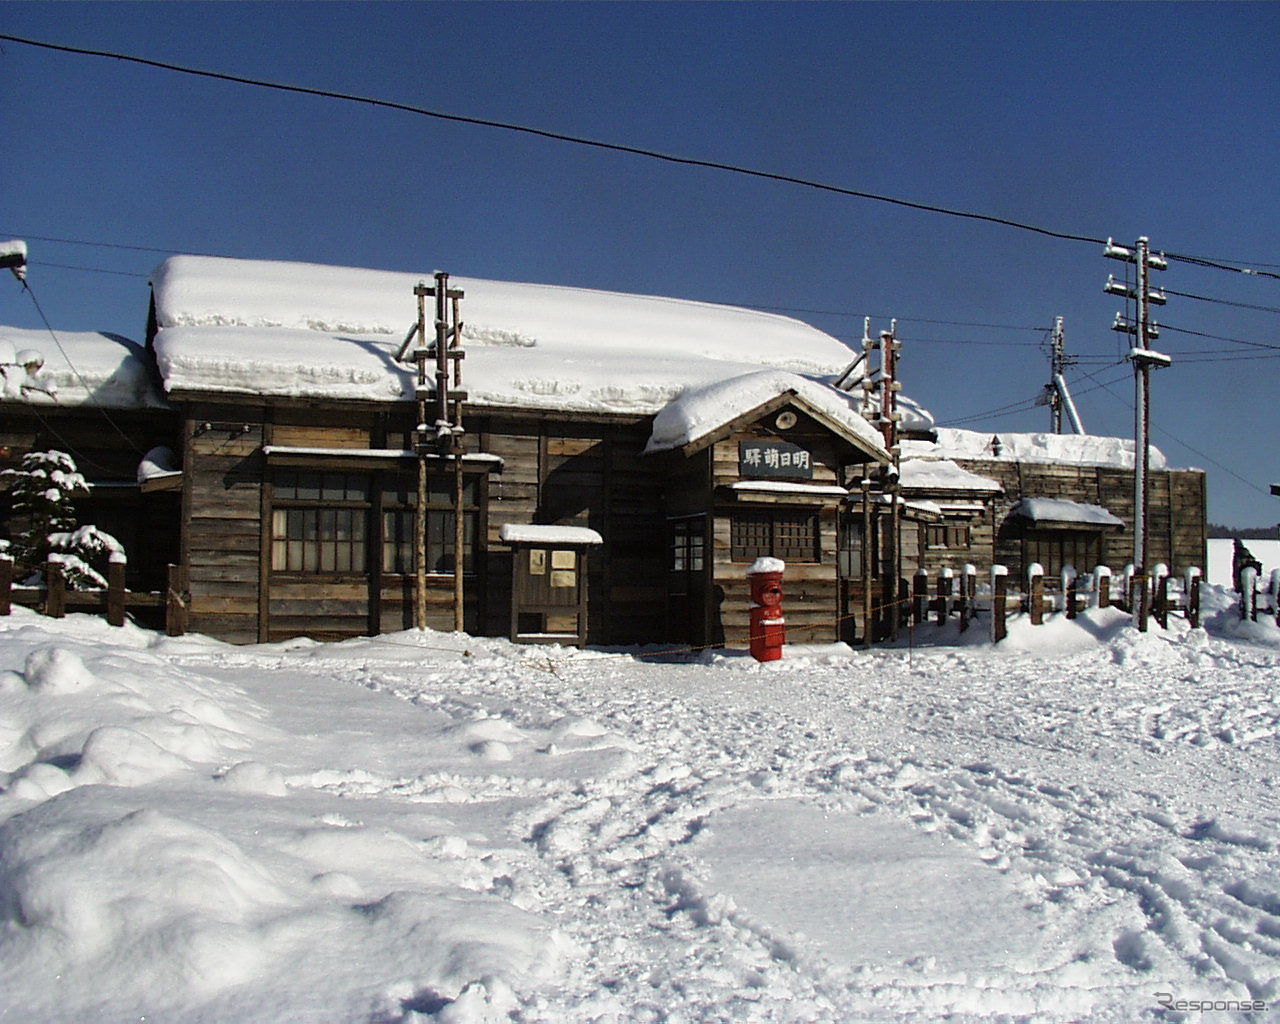 4月1日で廃駅となる沼田町内の留萌本線恵比島駅。NHK朝の連続ドラマで「明日萌駅」として知られ、ロケ当時のセットのまま残されている。1999年12月18日。